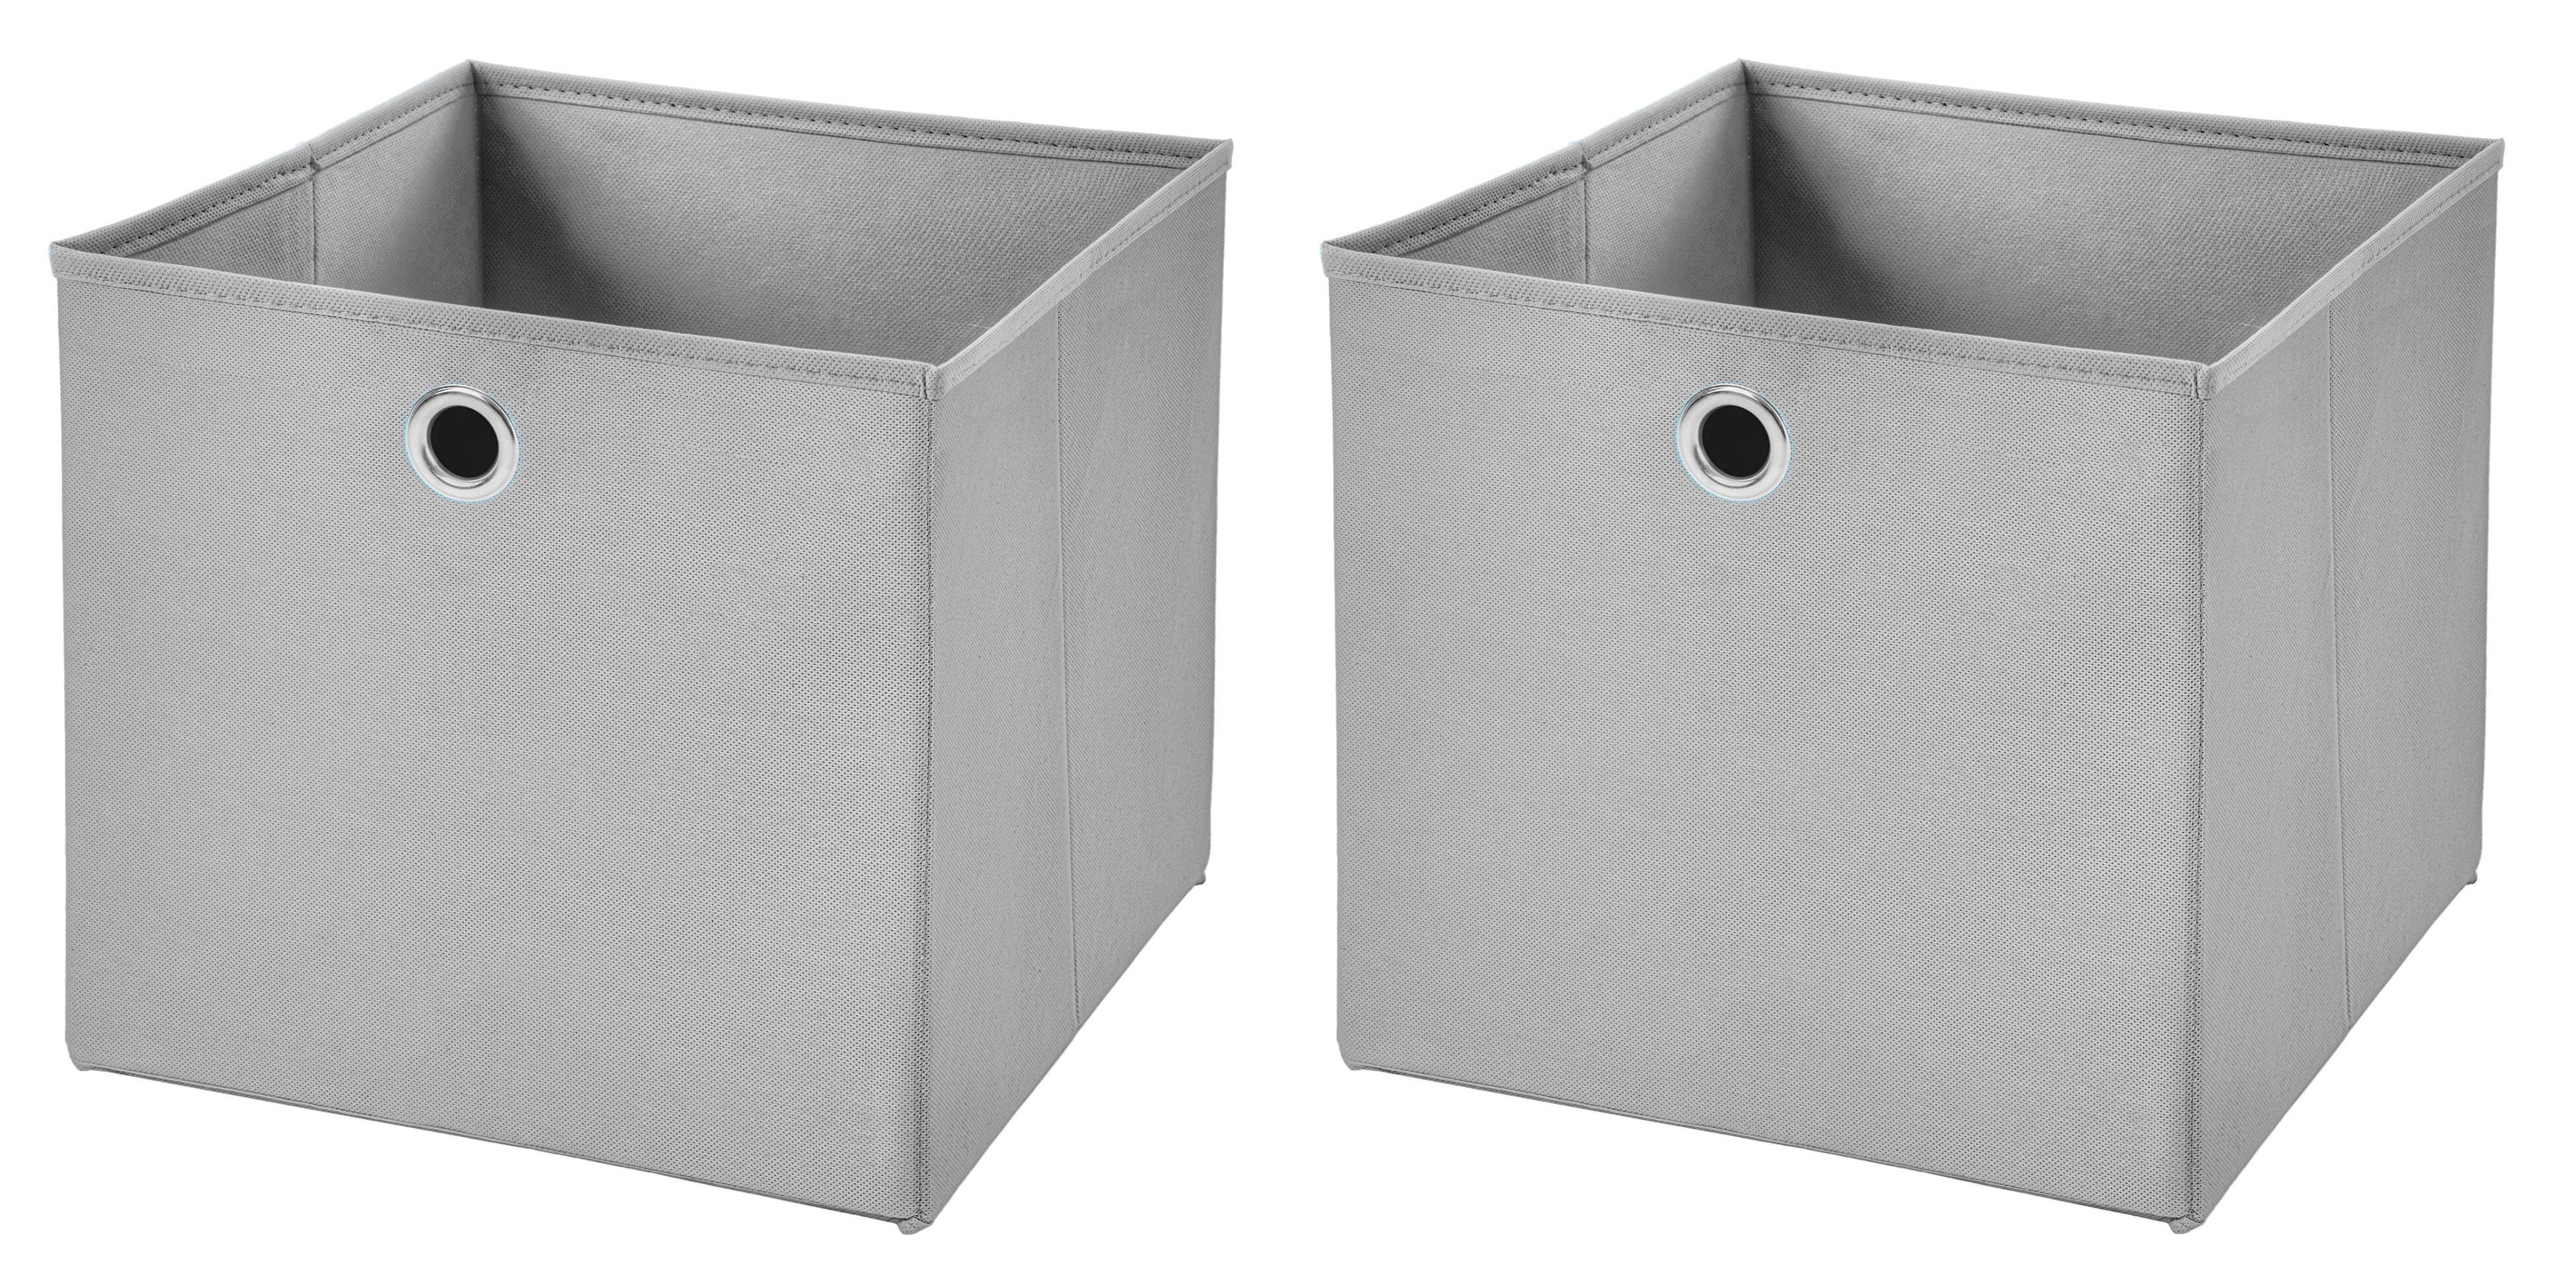 StickandShine Faltbox 2 Stück 32 x 32 x 32 cm Faltbox ohne Deckel Stoffbox  Aufbewahrungsbox (4er SET 32x32x32) in verschiedenen Farben 32cm